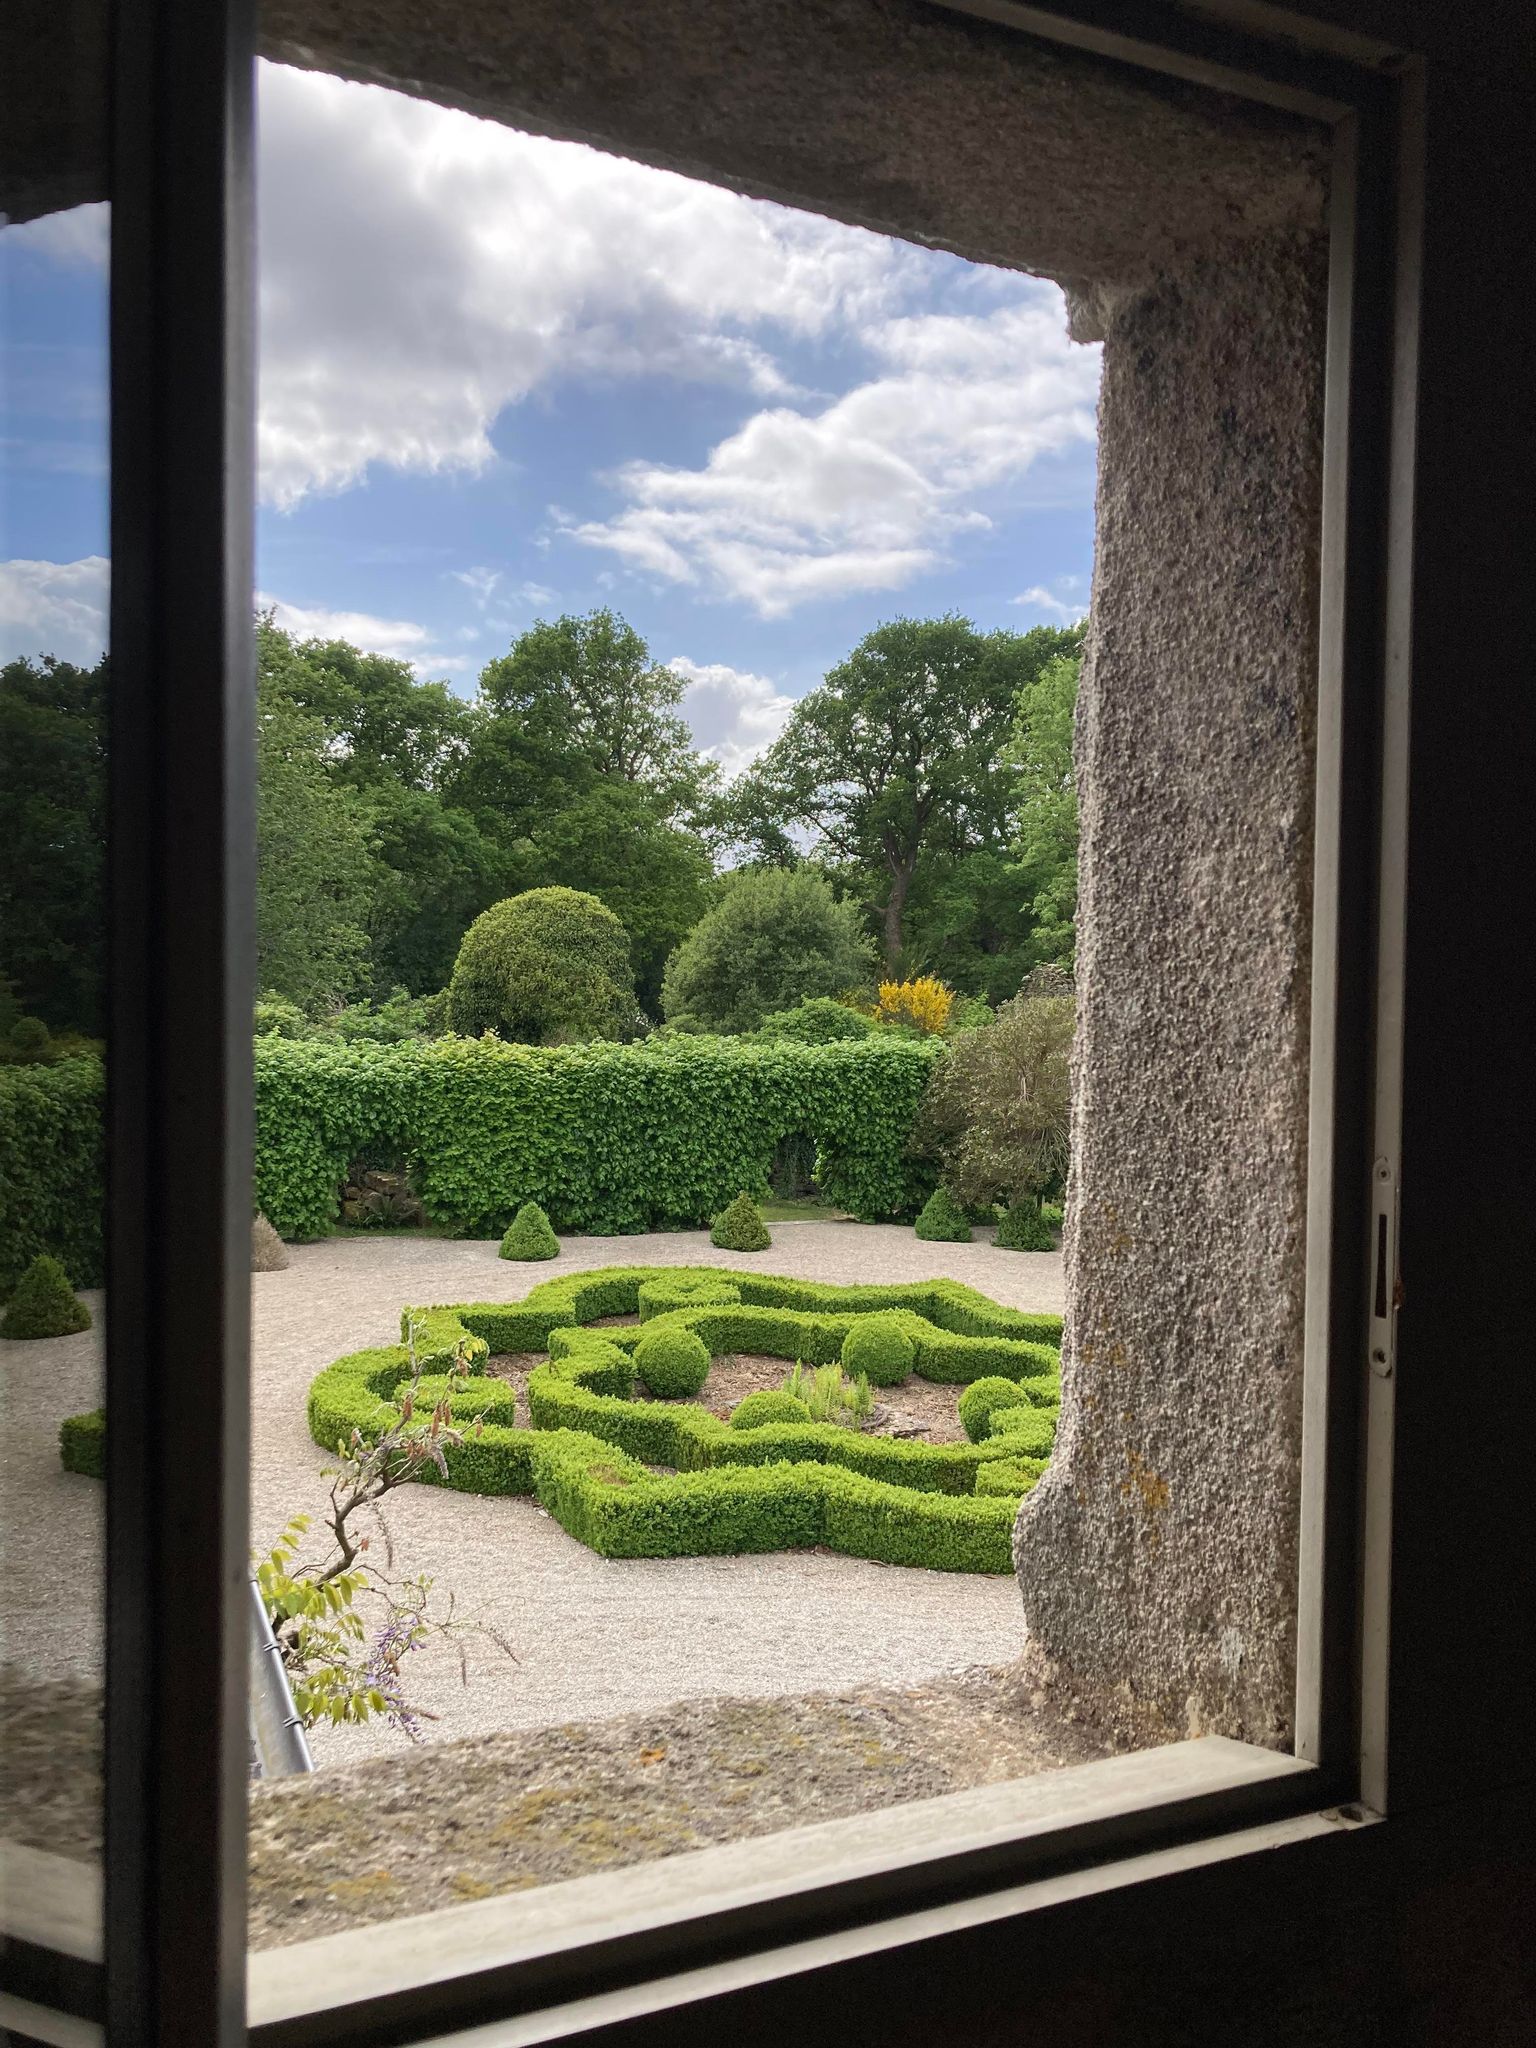 Jardin Français avec Rosace de Buis Les jardins français sont souvent caractérisés par leur symétrie, leur ordre géométrique, leurs parterres de fleurs et leurs éléments architecturaux formels